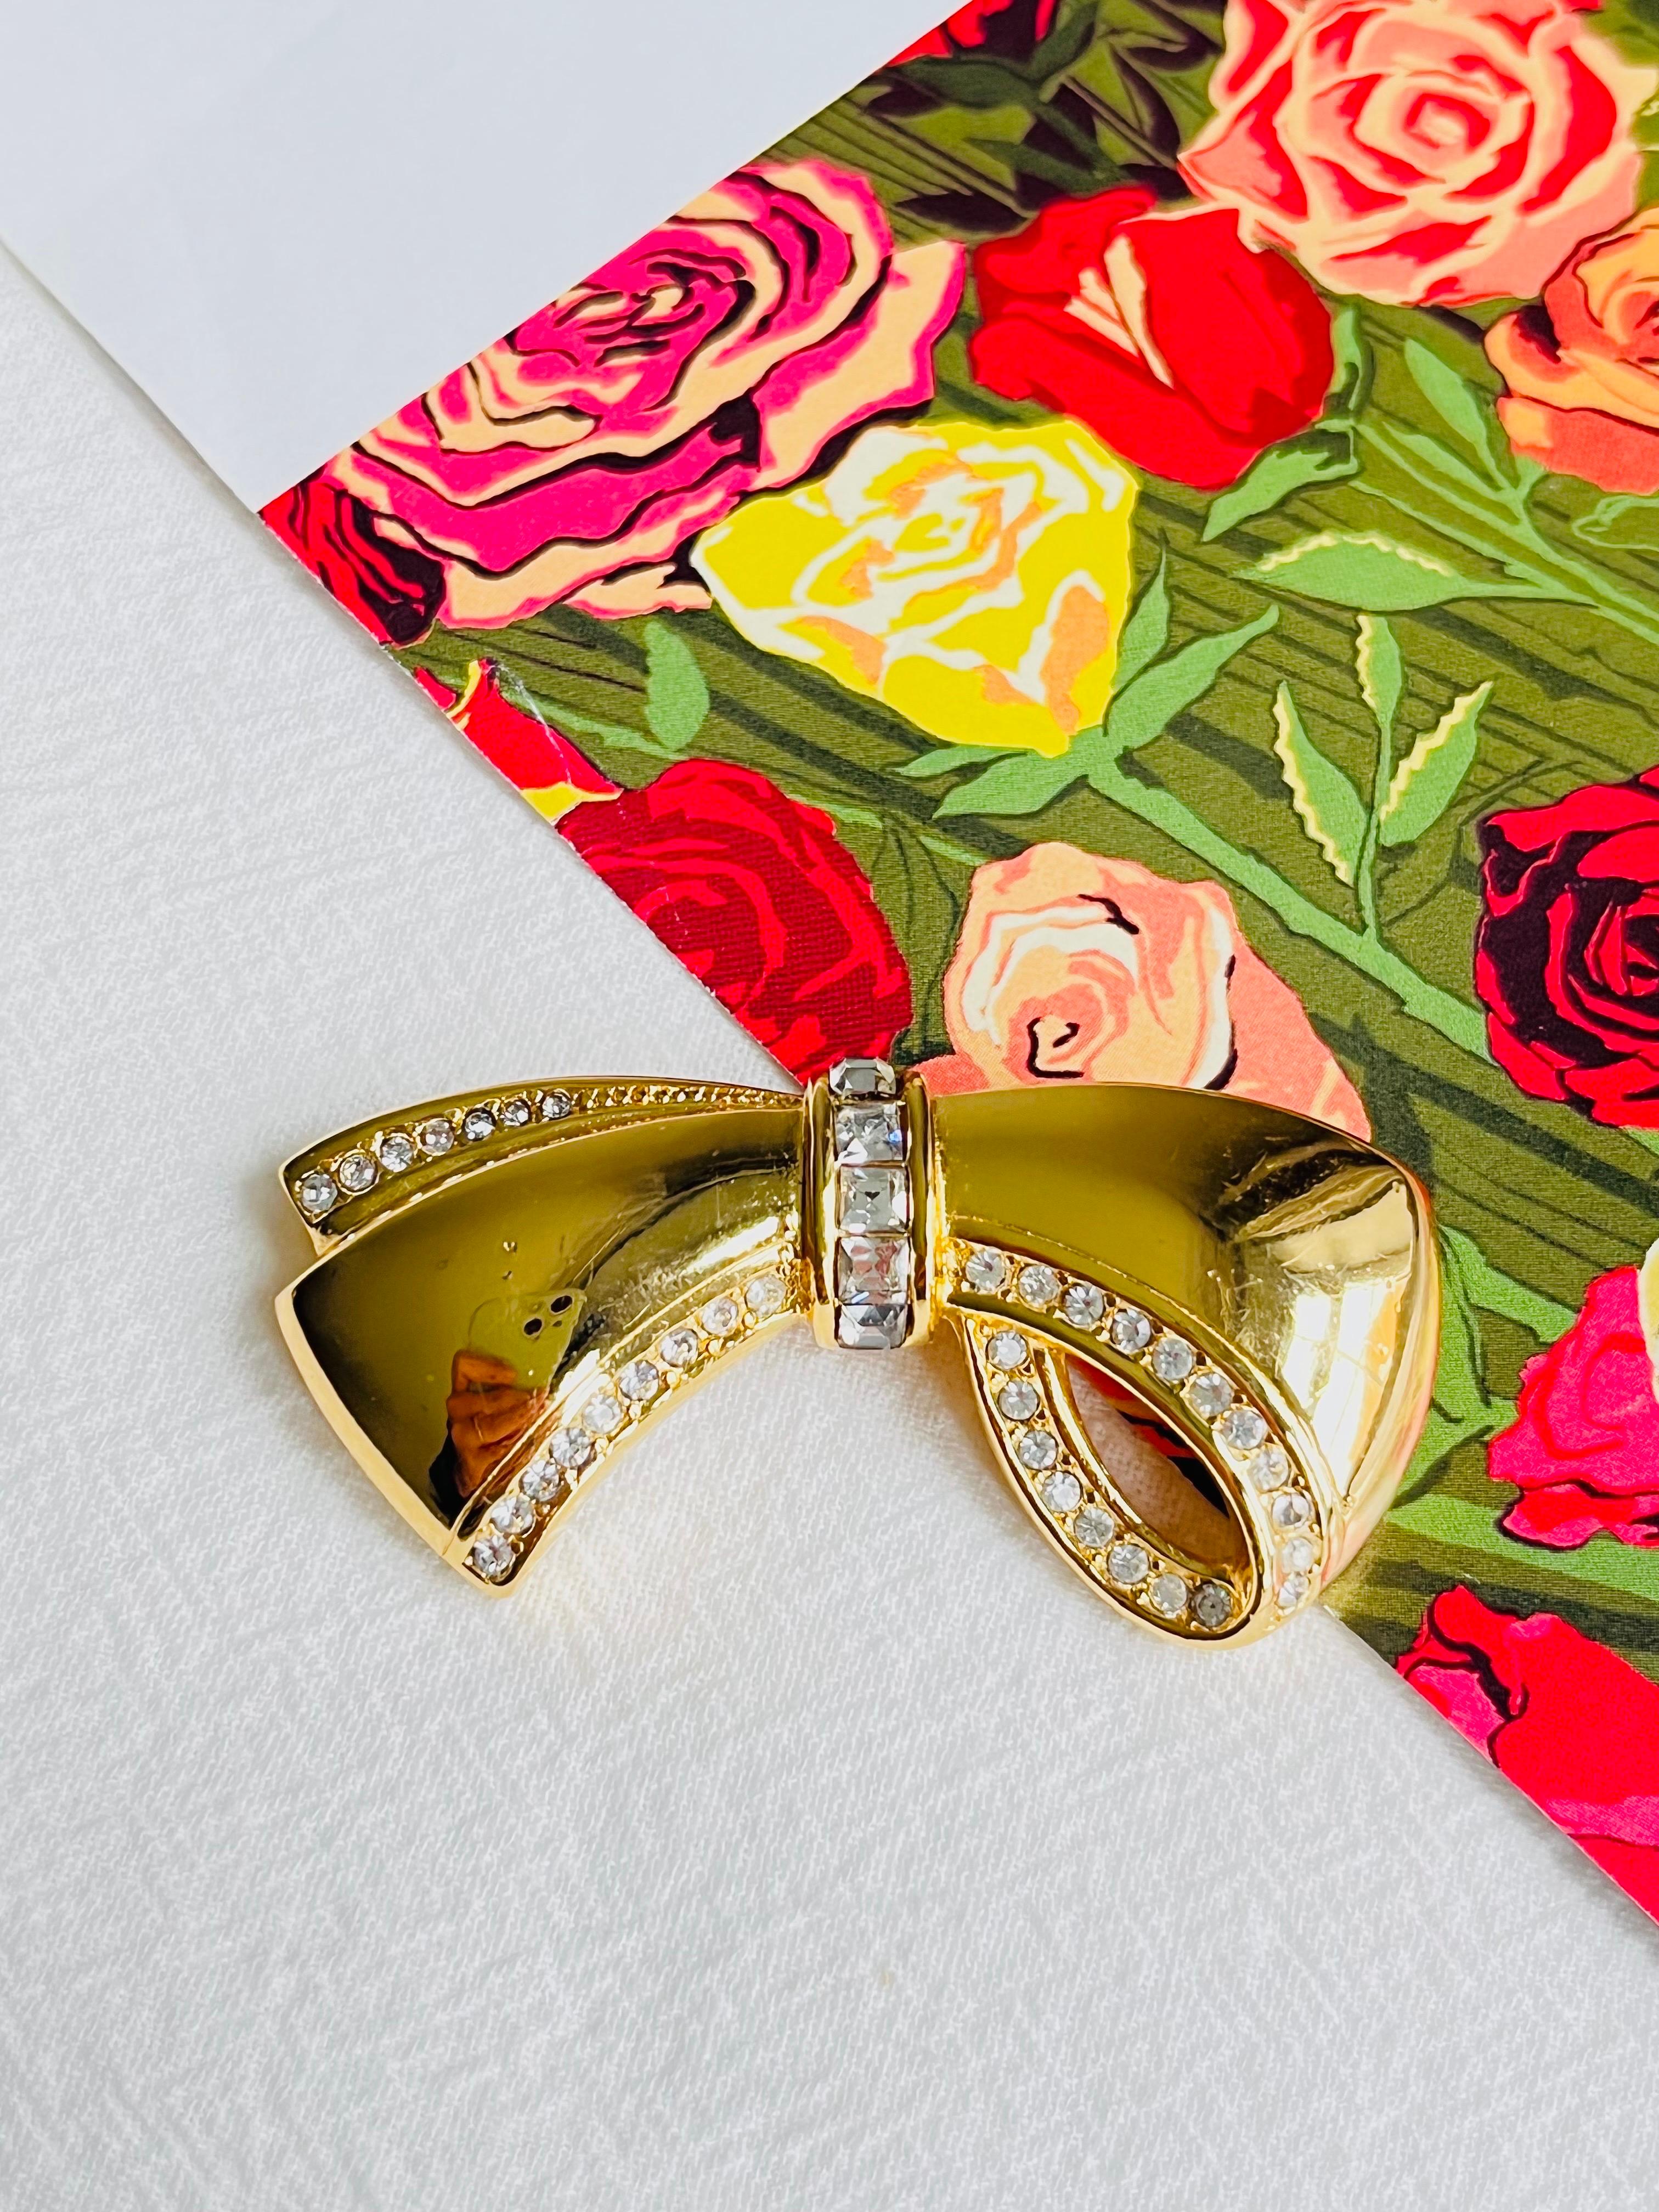 Christian Dior 1980s Vintage Glow Knot Schleife Band Kristalle Brosche, Gold-Ton

Sehr guter Zustand. Leichte Kratzer, kaum spürbar. 100% echt.

Ein Unikat. Diese stilisierte Brosche ist vergoldet. Verschluss mit Sicherheitsnadel.

Größe: 5,3 cm x